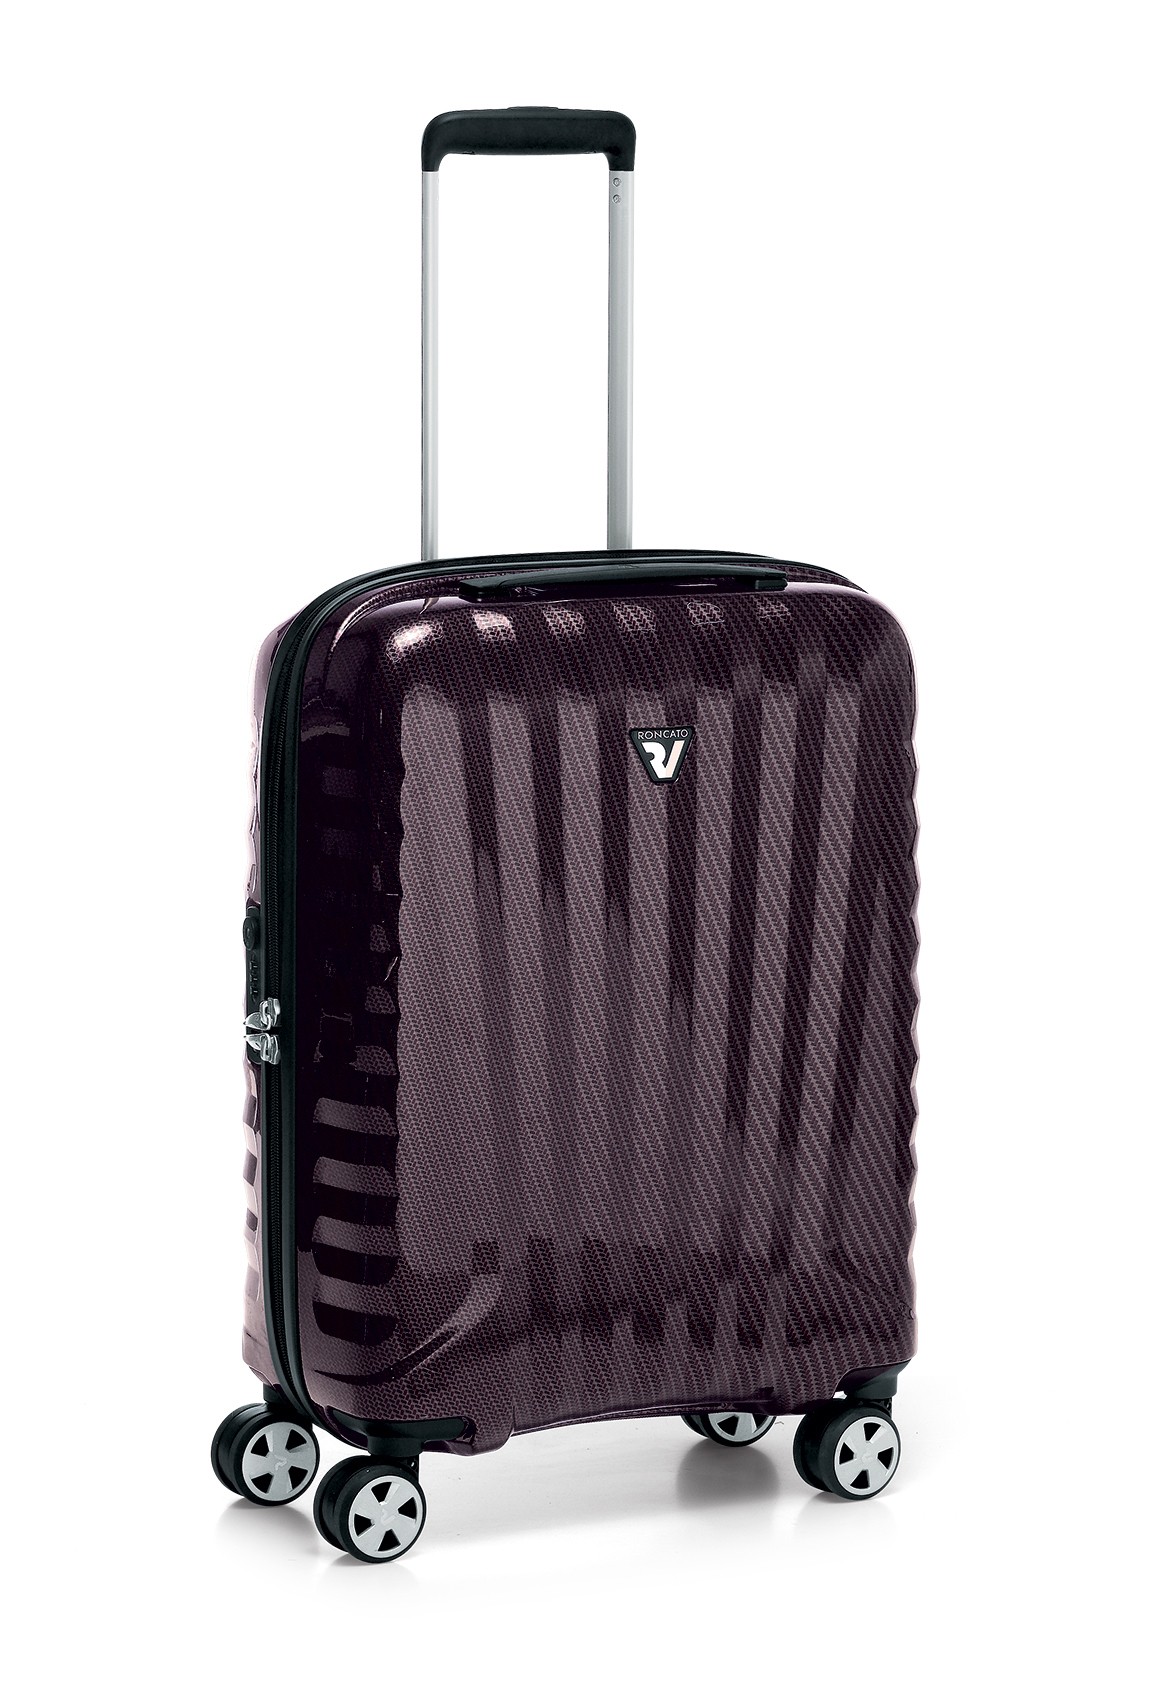 Маленька валіза Roncato Uno ZSL Premium 5173/0199